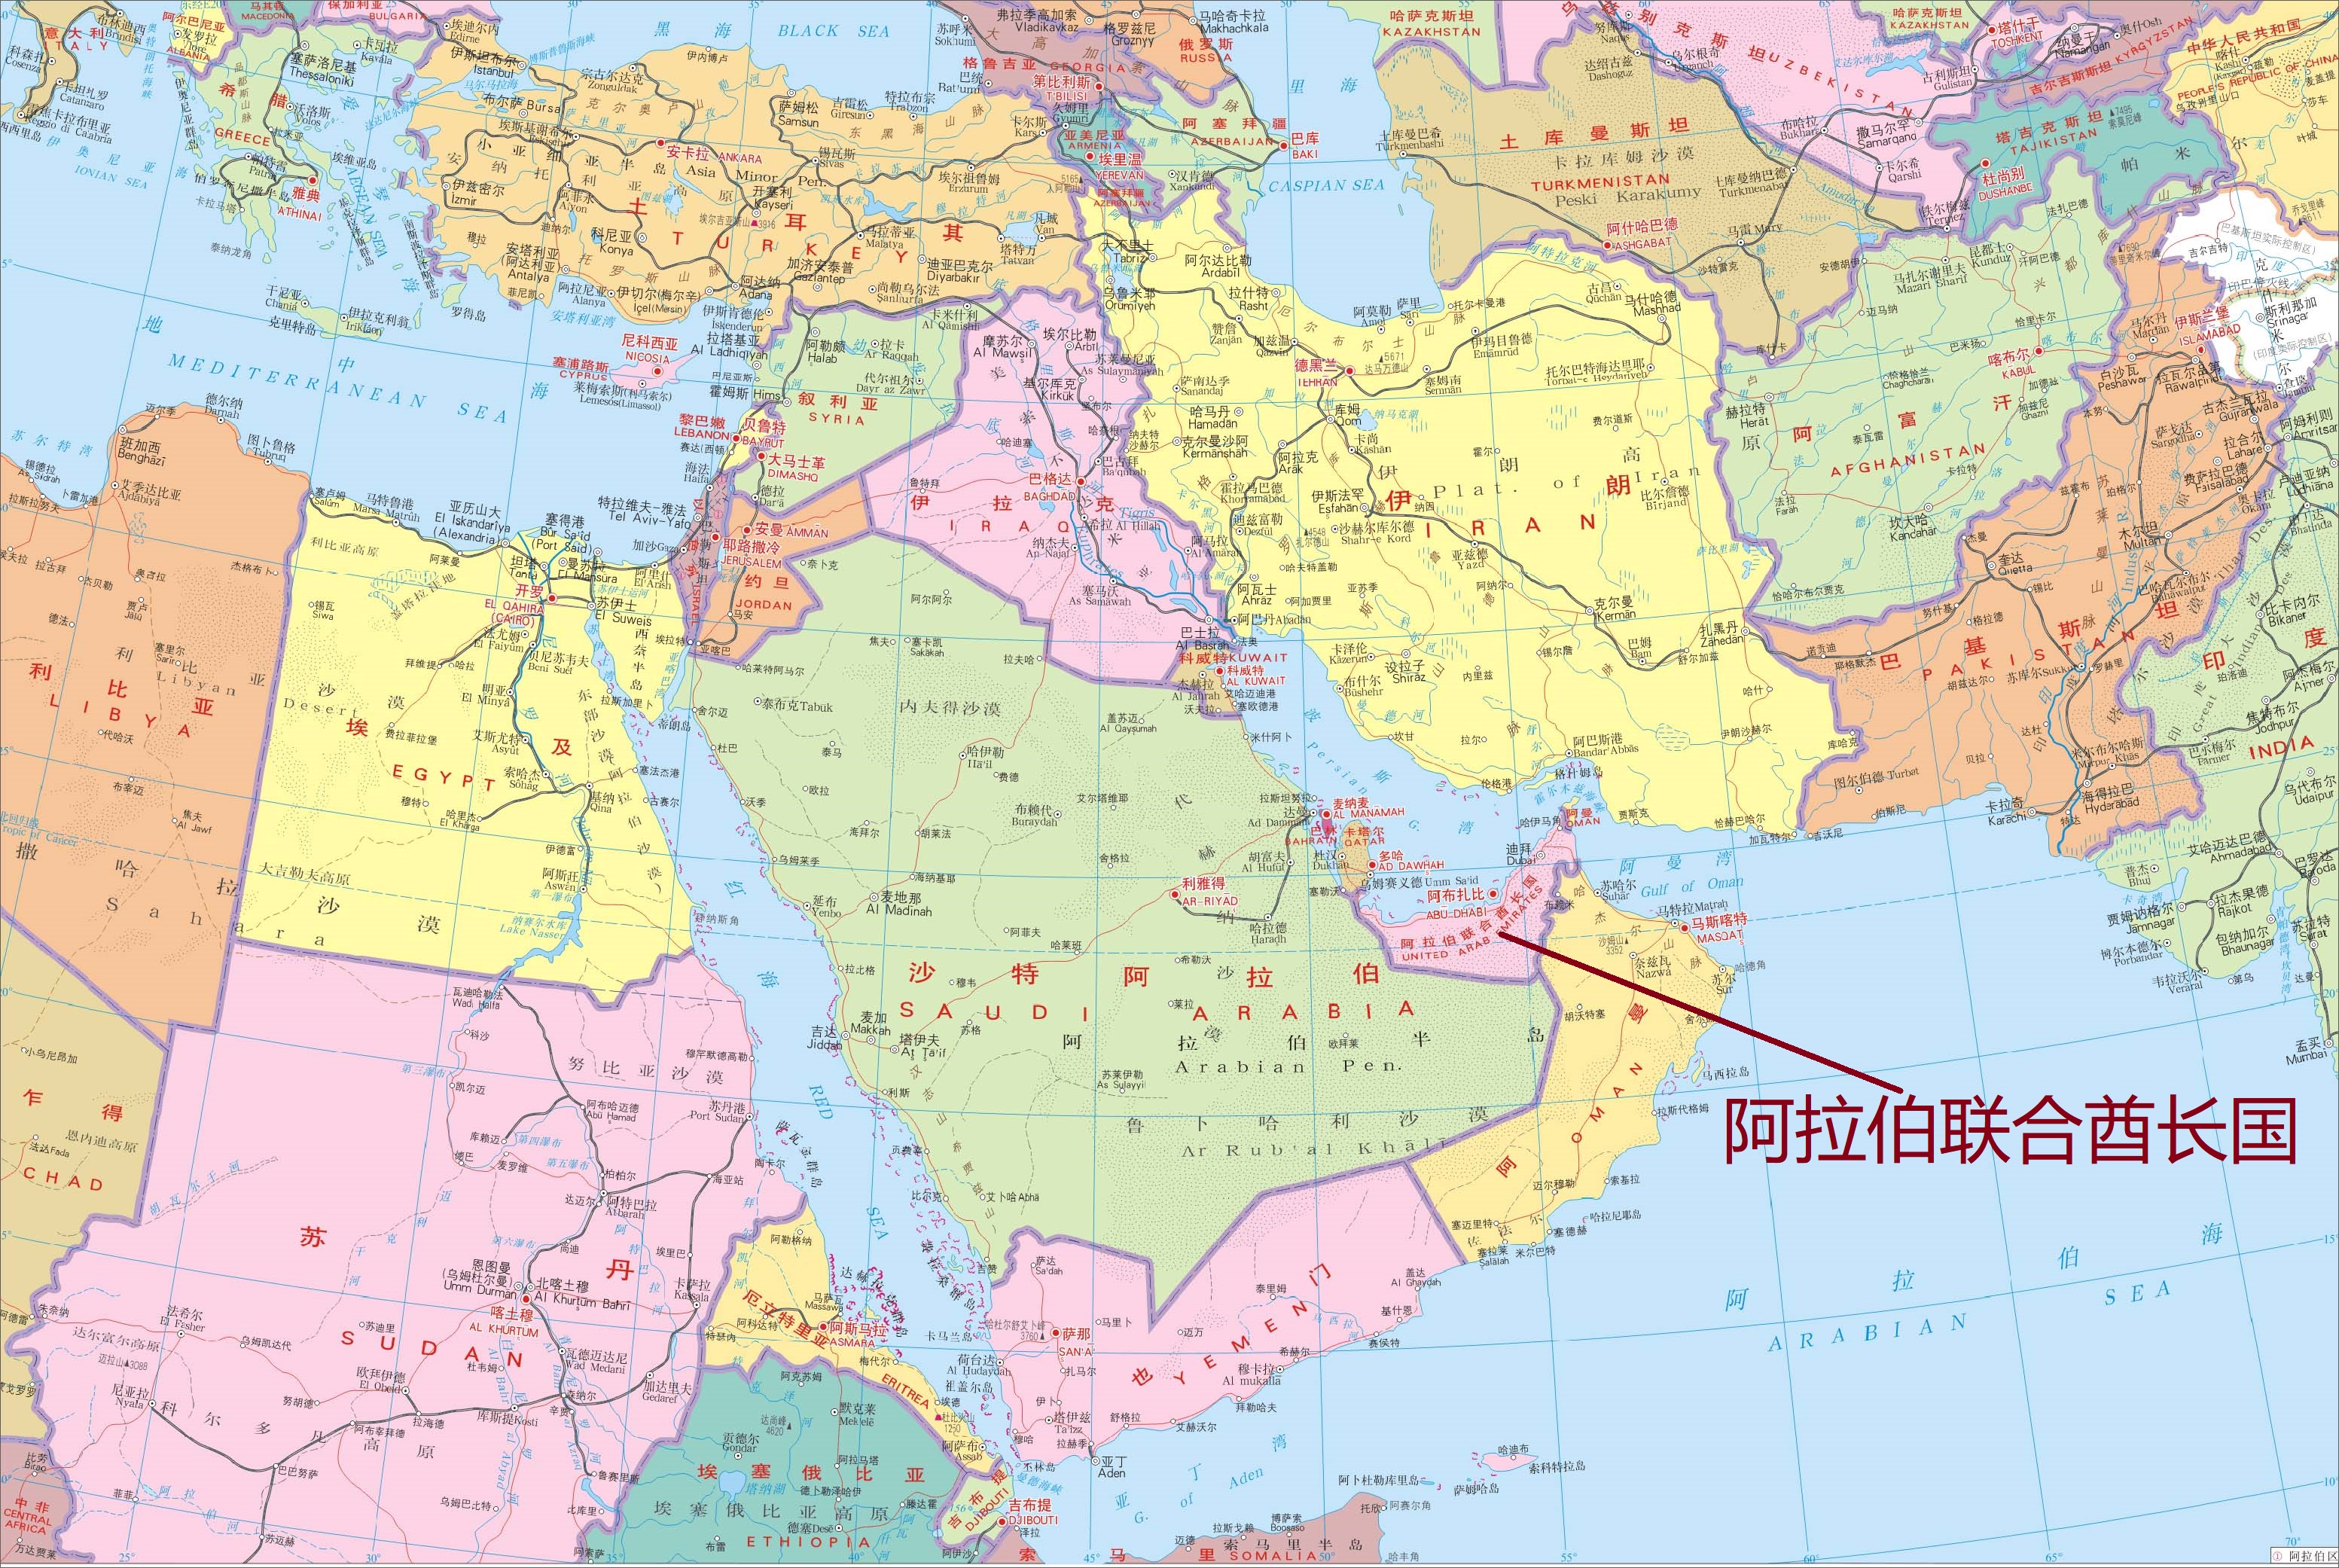 迪拜的地理位置 迪拜地理位置分析